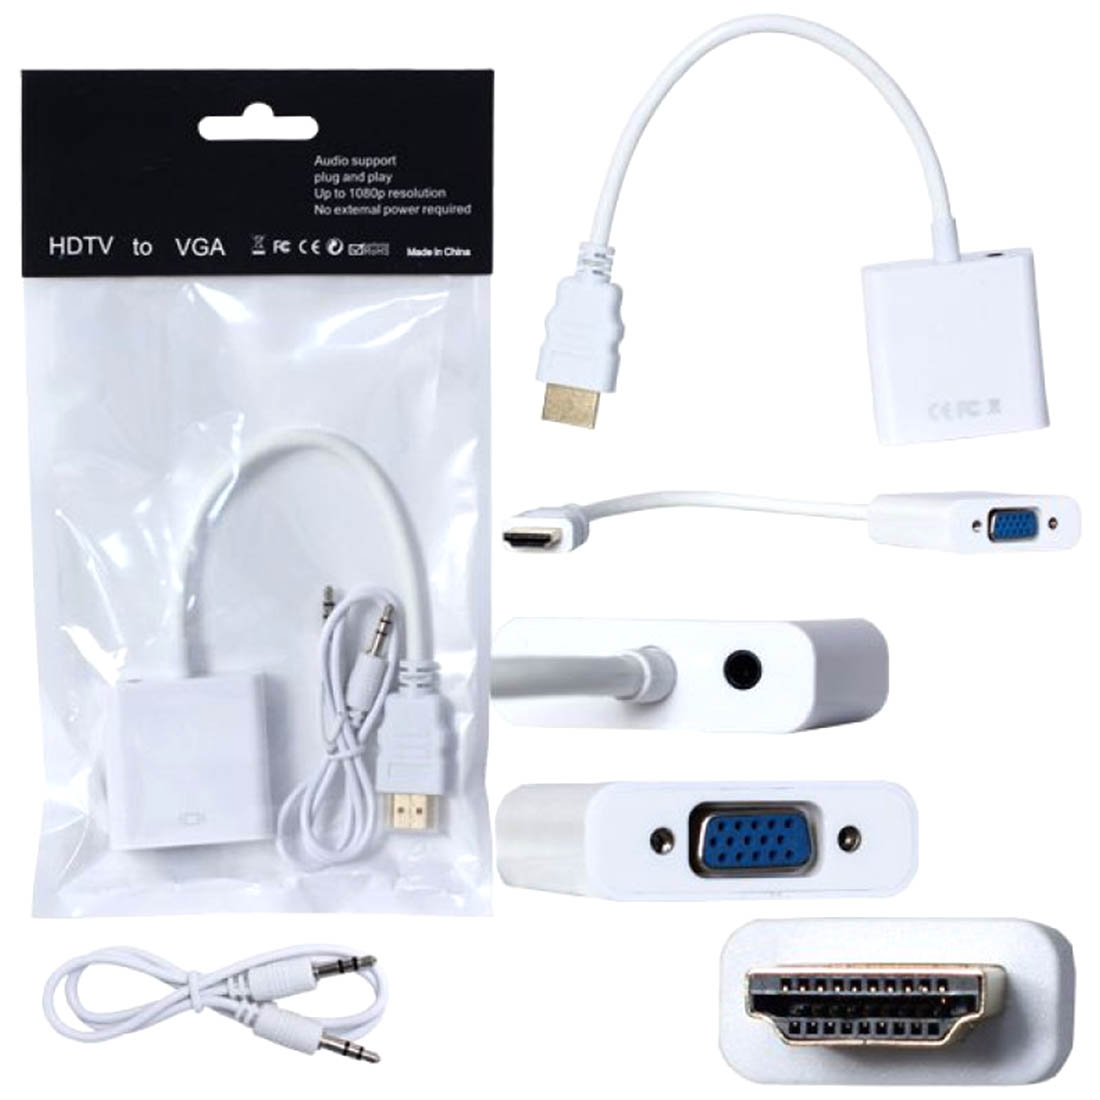 Переходник, адаптер, конвертер MRM H178 HDMI на VGA (HDMI to VGA) + AUX разъем, длина 15 см, цвет белый